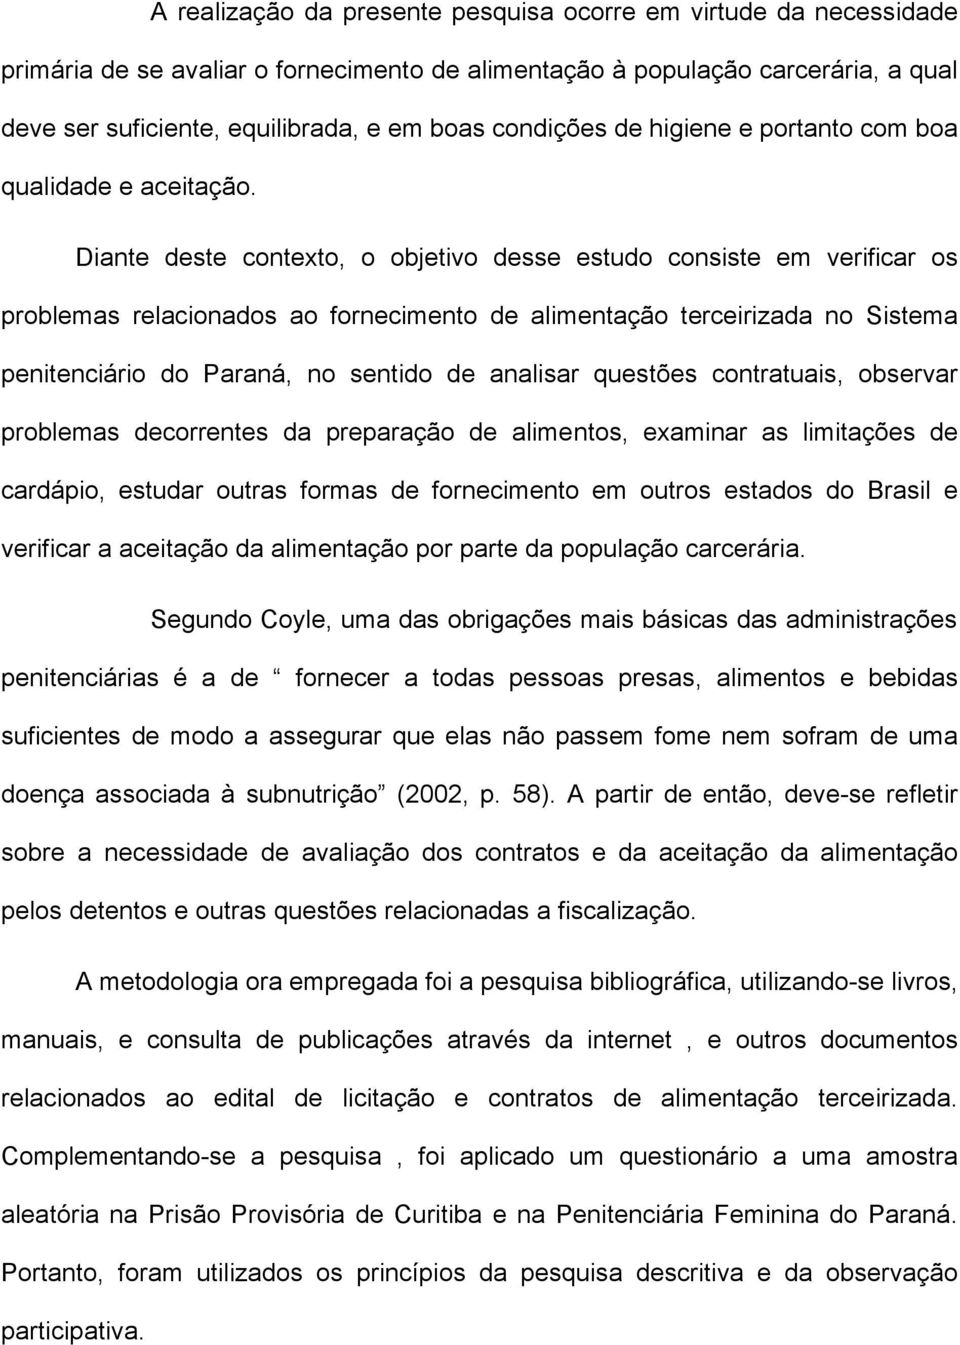 Diante deste contexto, o objetivo desse estudo consiste em verificar os problemas relacionados ao fornecimento de alimentação terceirizada no Sistema penitenciário do Paraná, no sentido de analisar